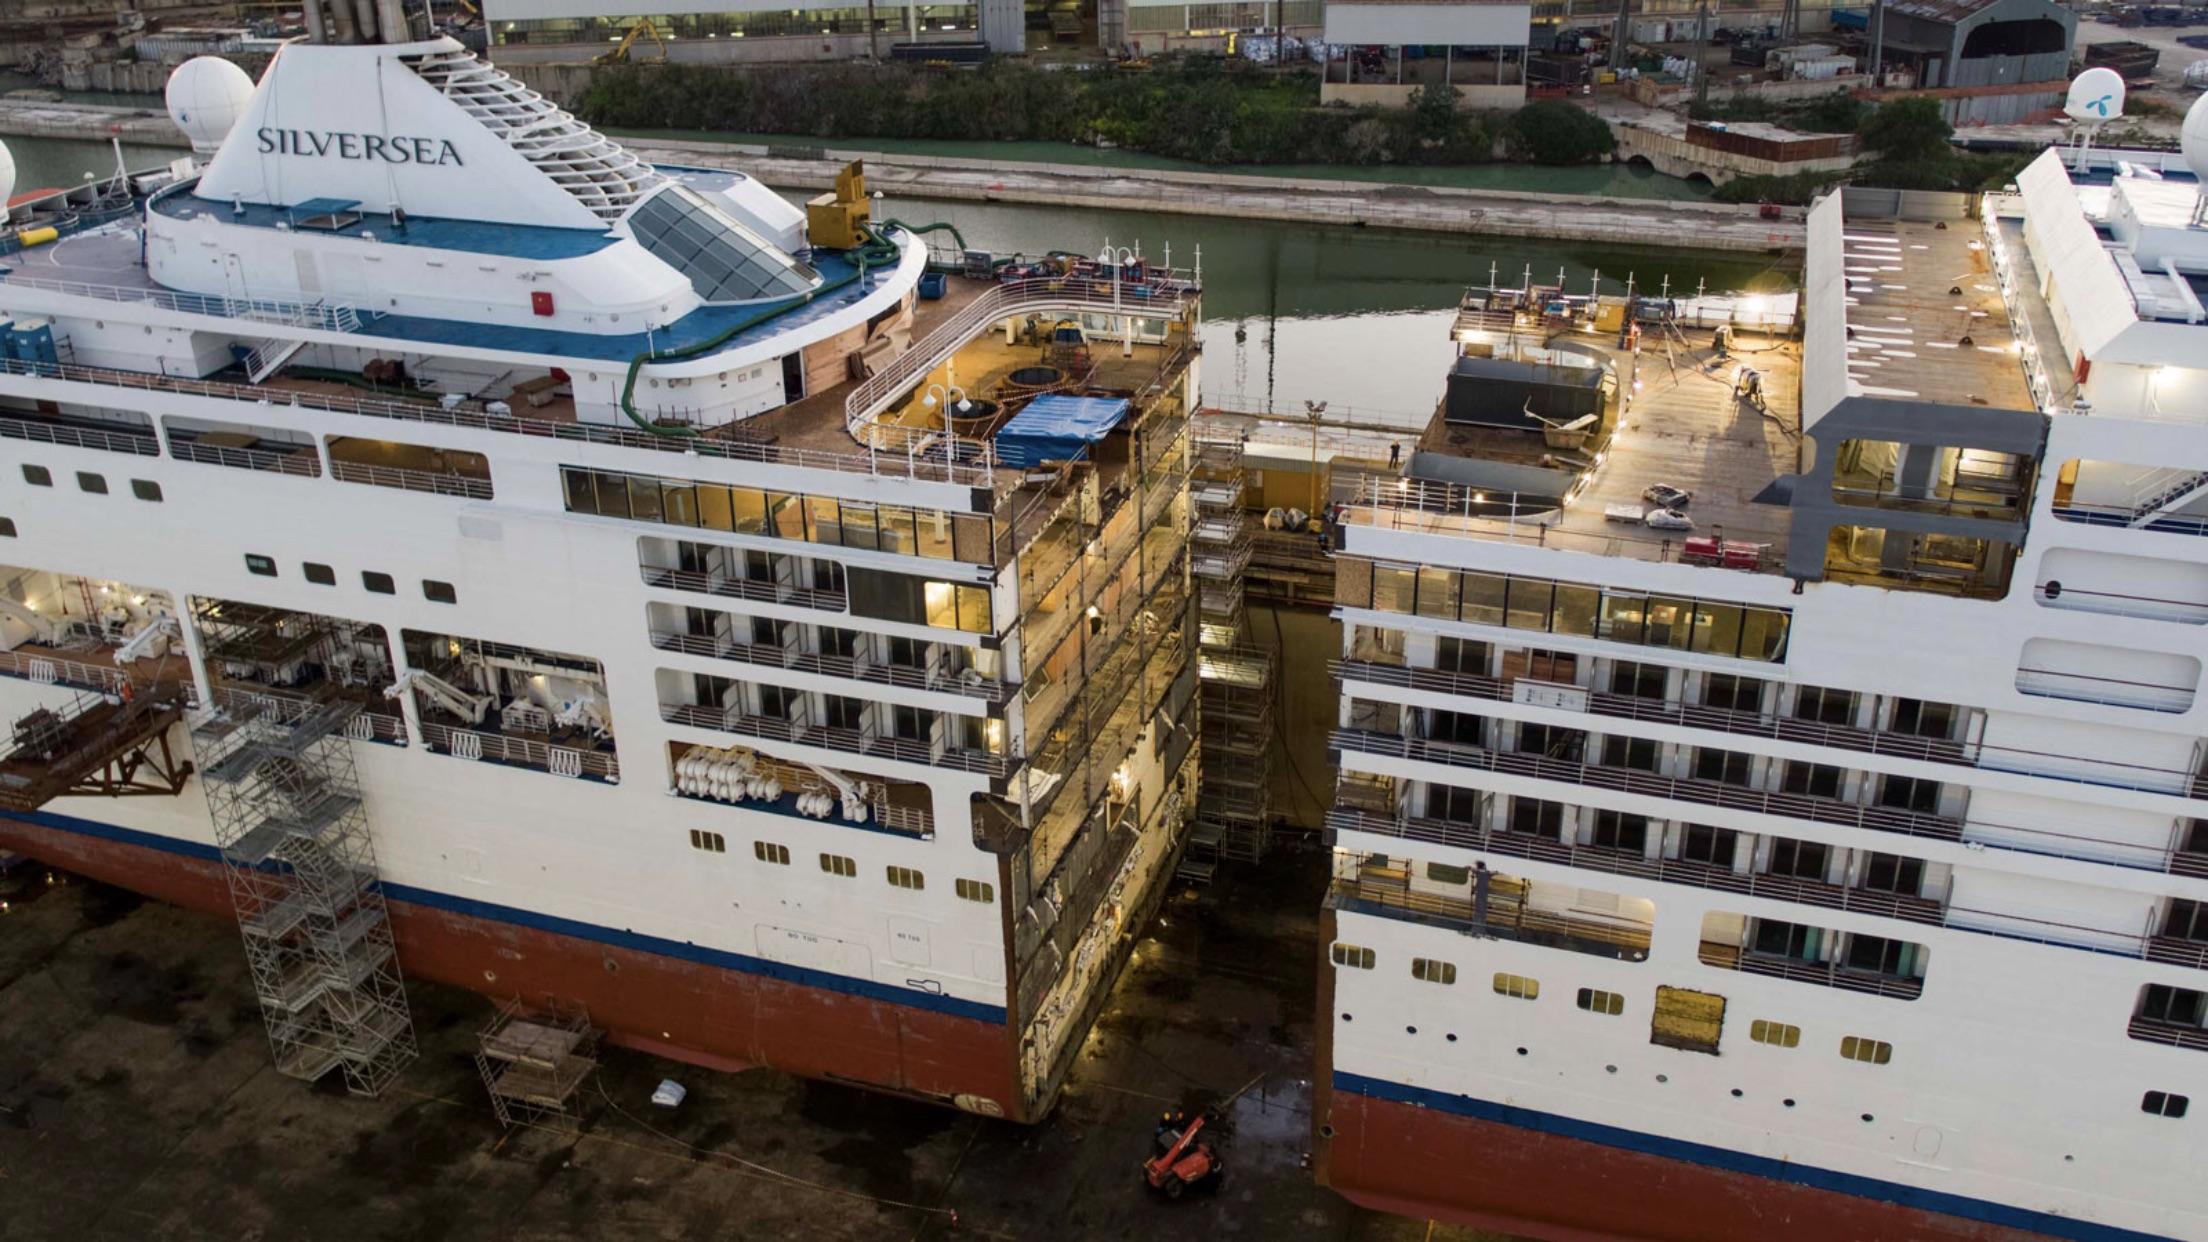 Em vez de construir um novo navio de cruzeiro, a Silversea decidiu cortar seu navio atual pela metade com 